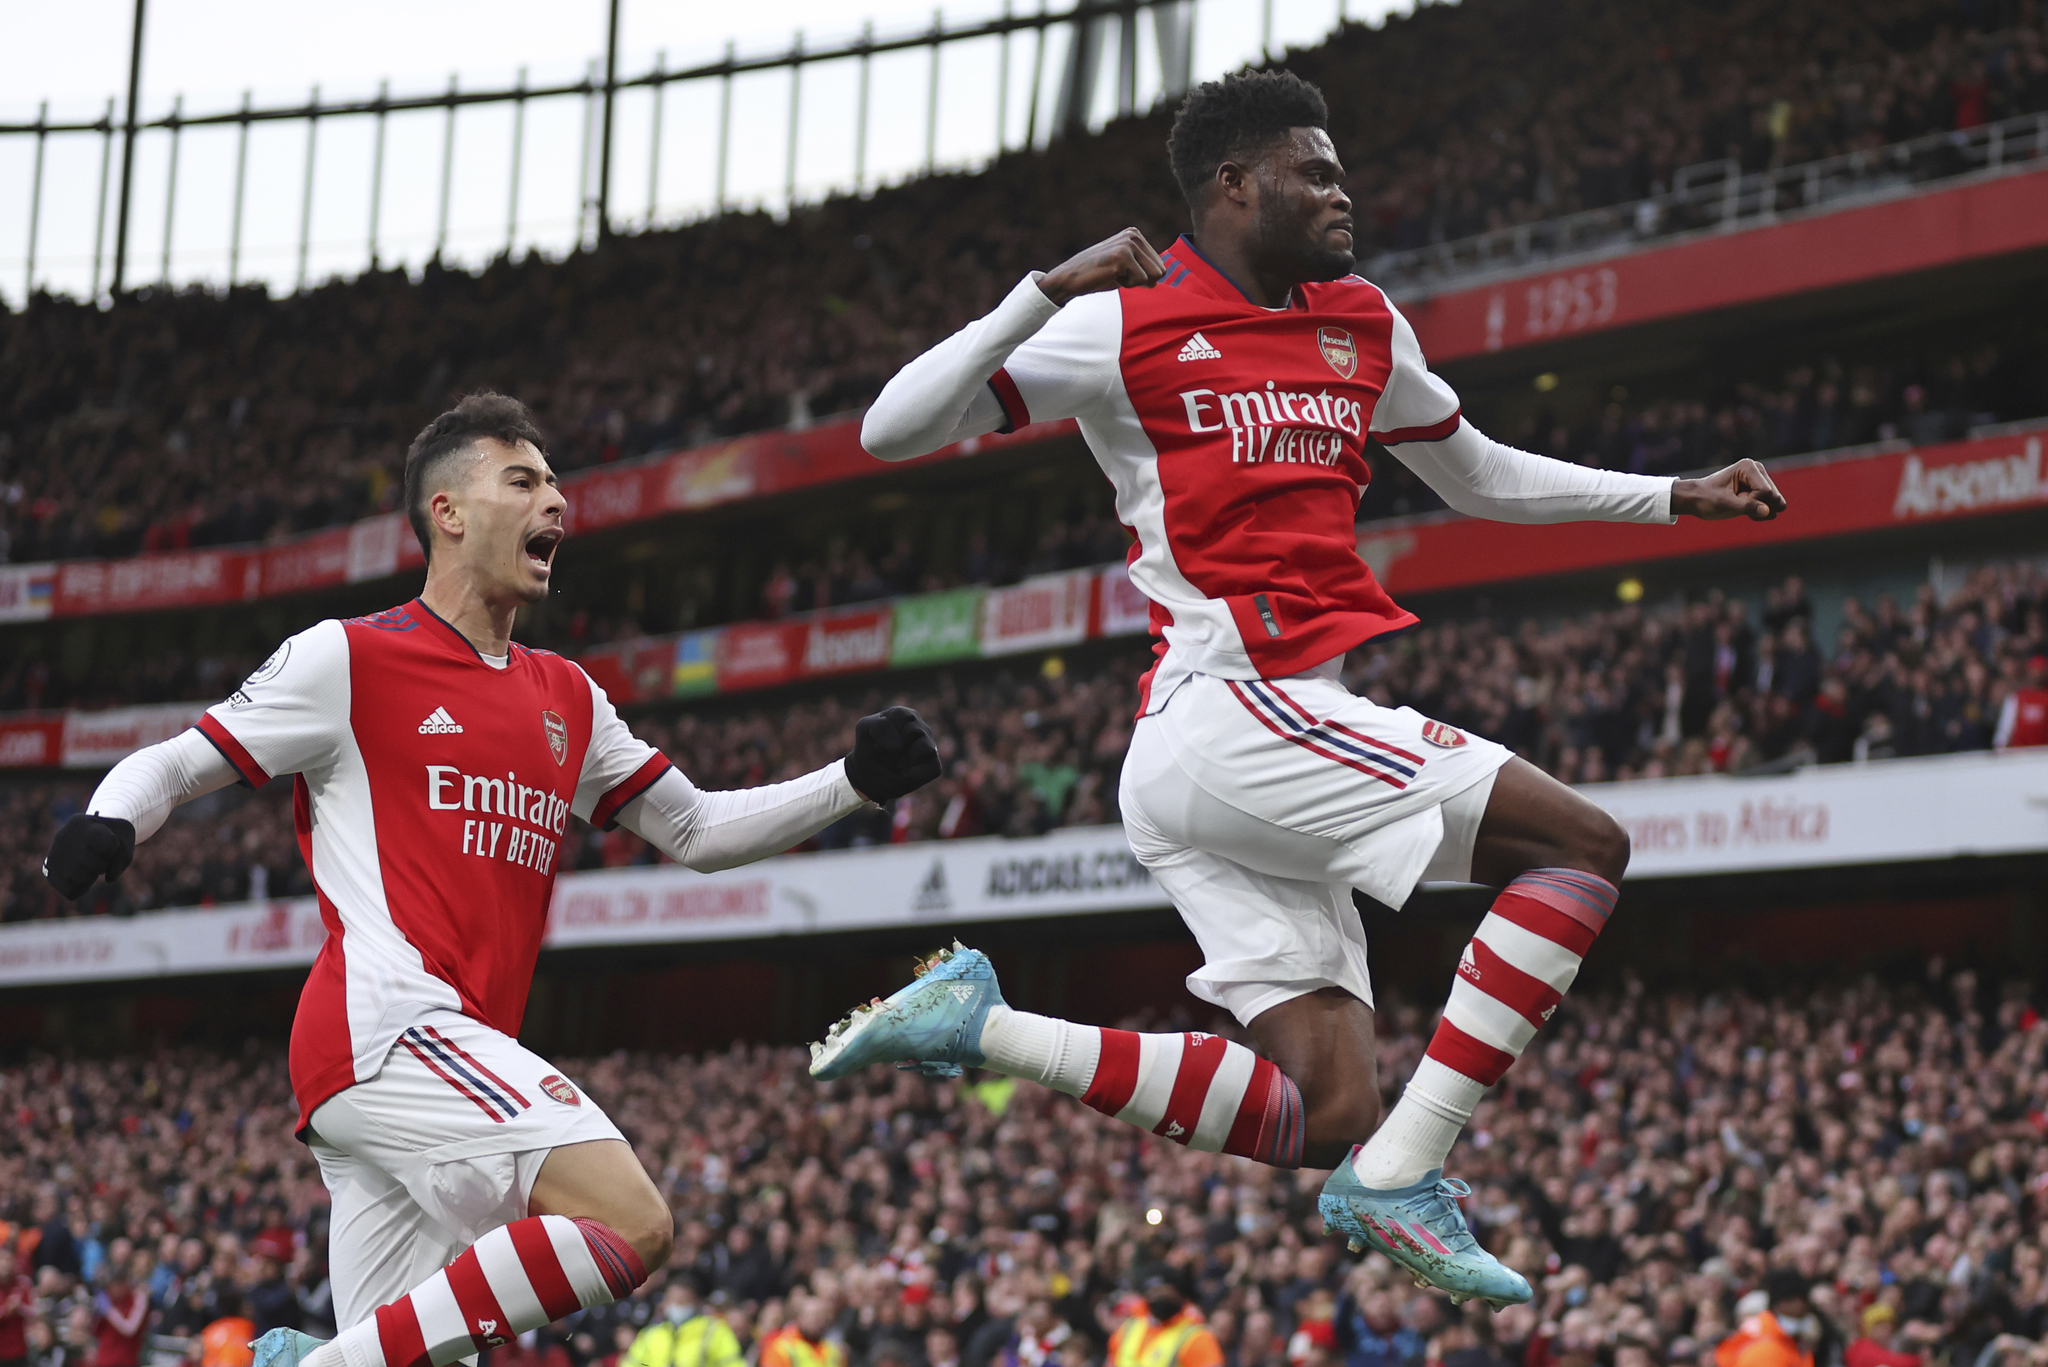 Arsenal's Thomas Partey celebrates after scoring